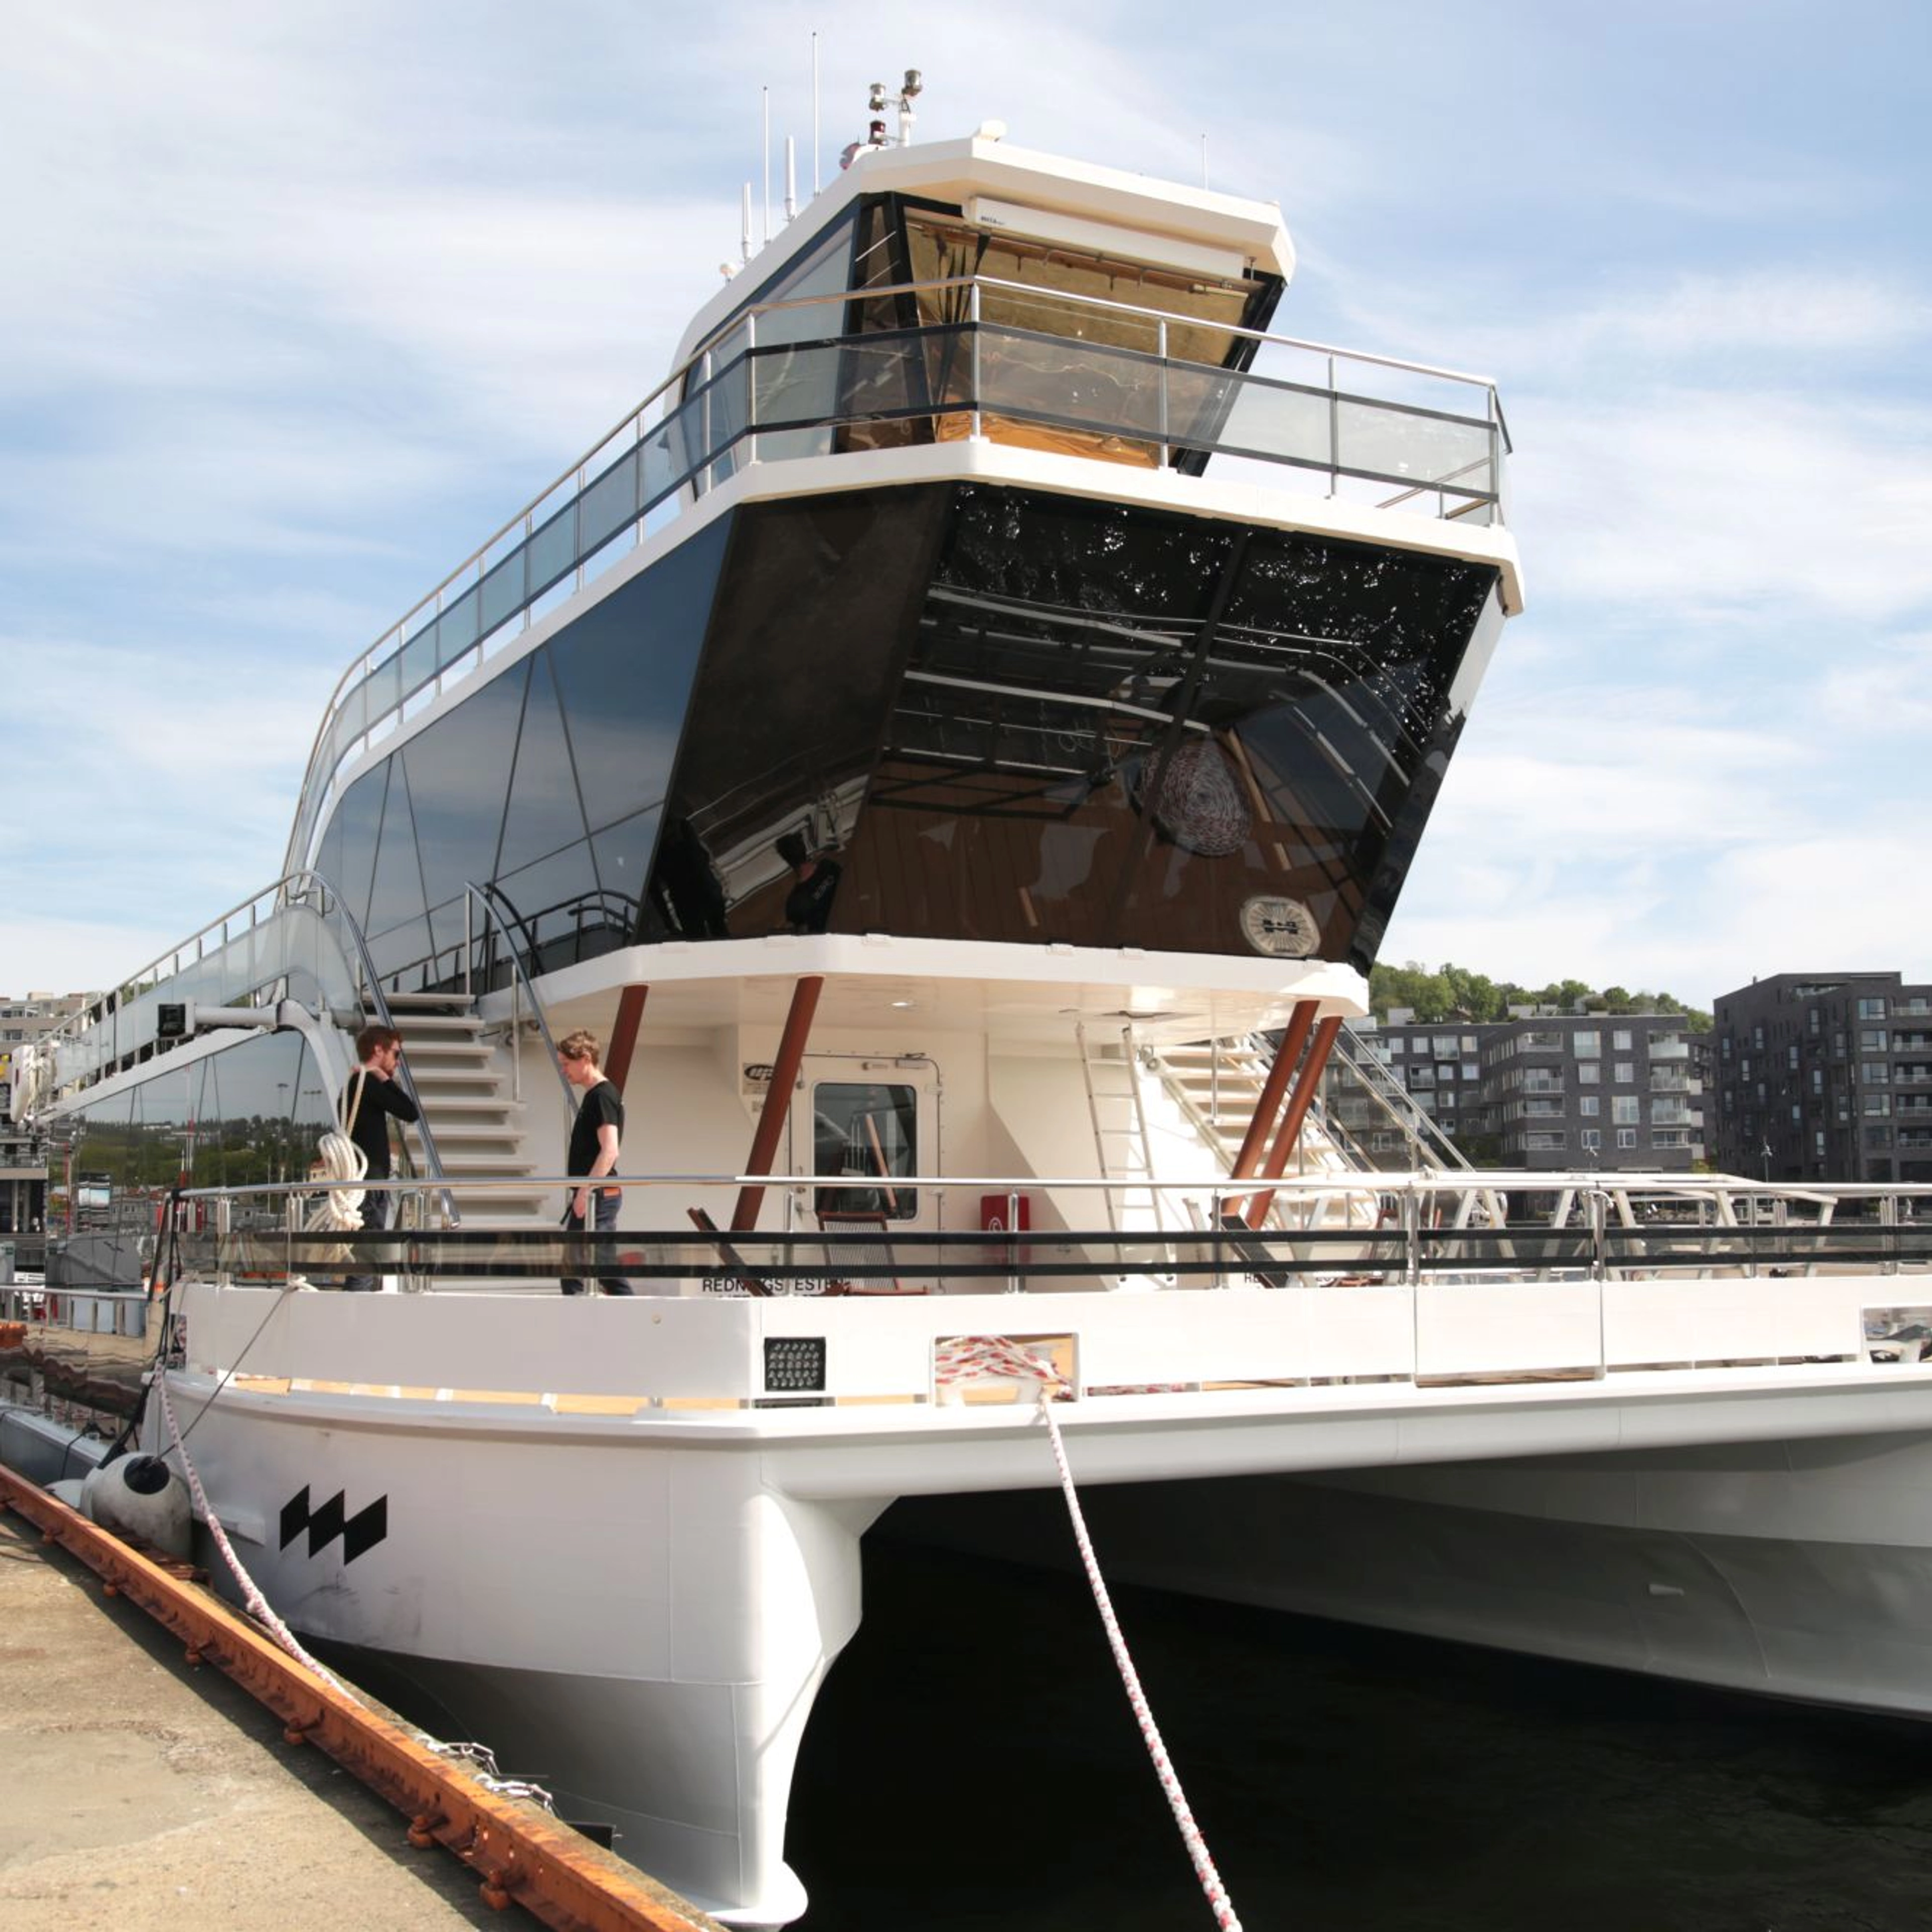 Middagscruise på Oslofjorden med en stillegående hybridbåt - til kai i Oslo